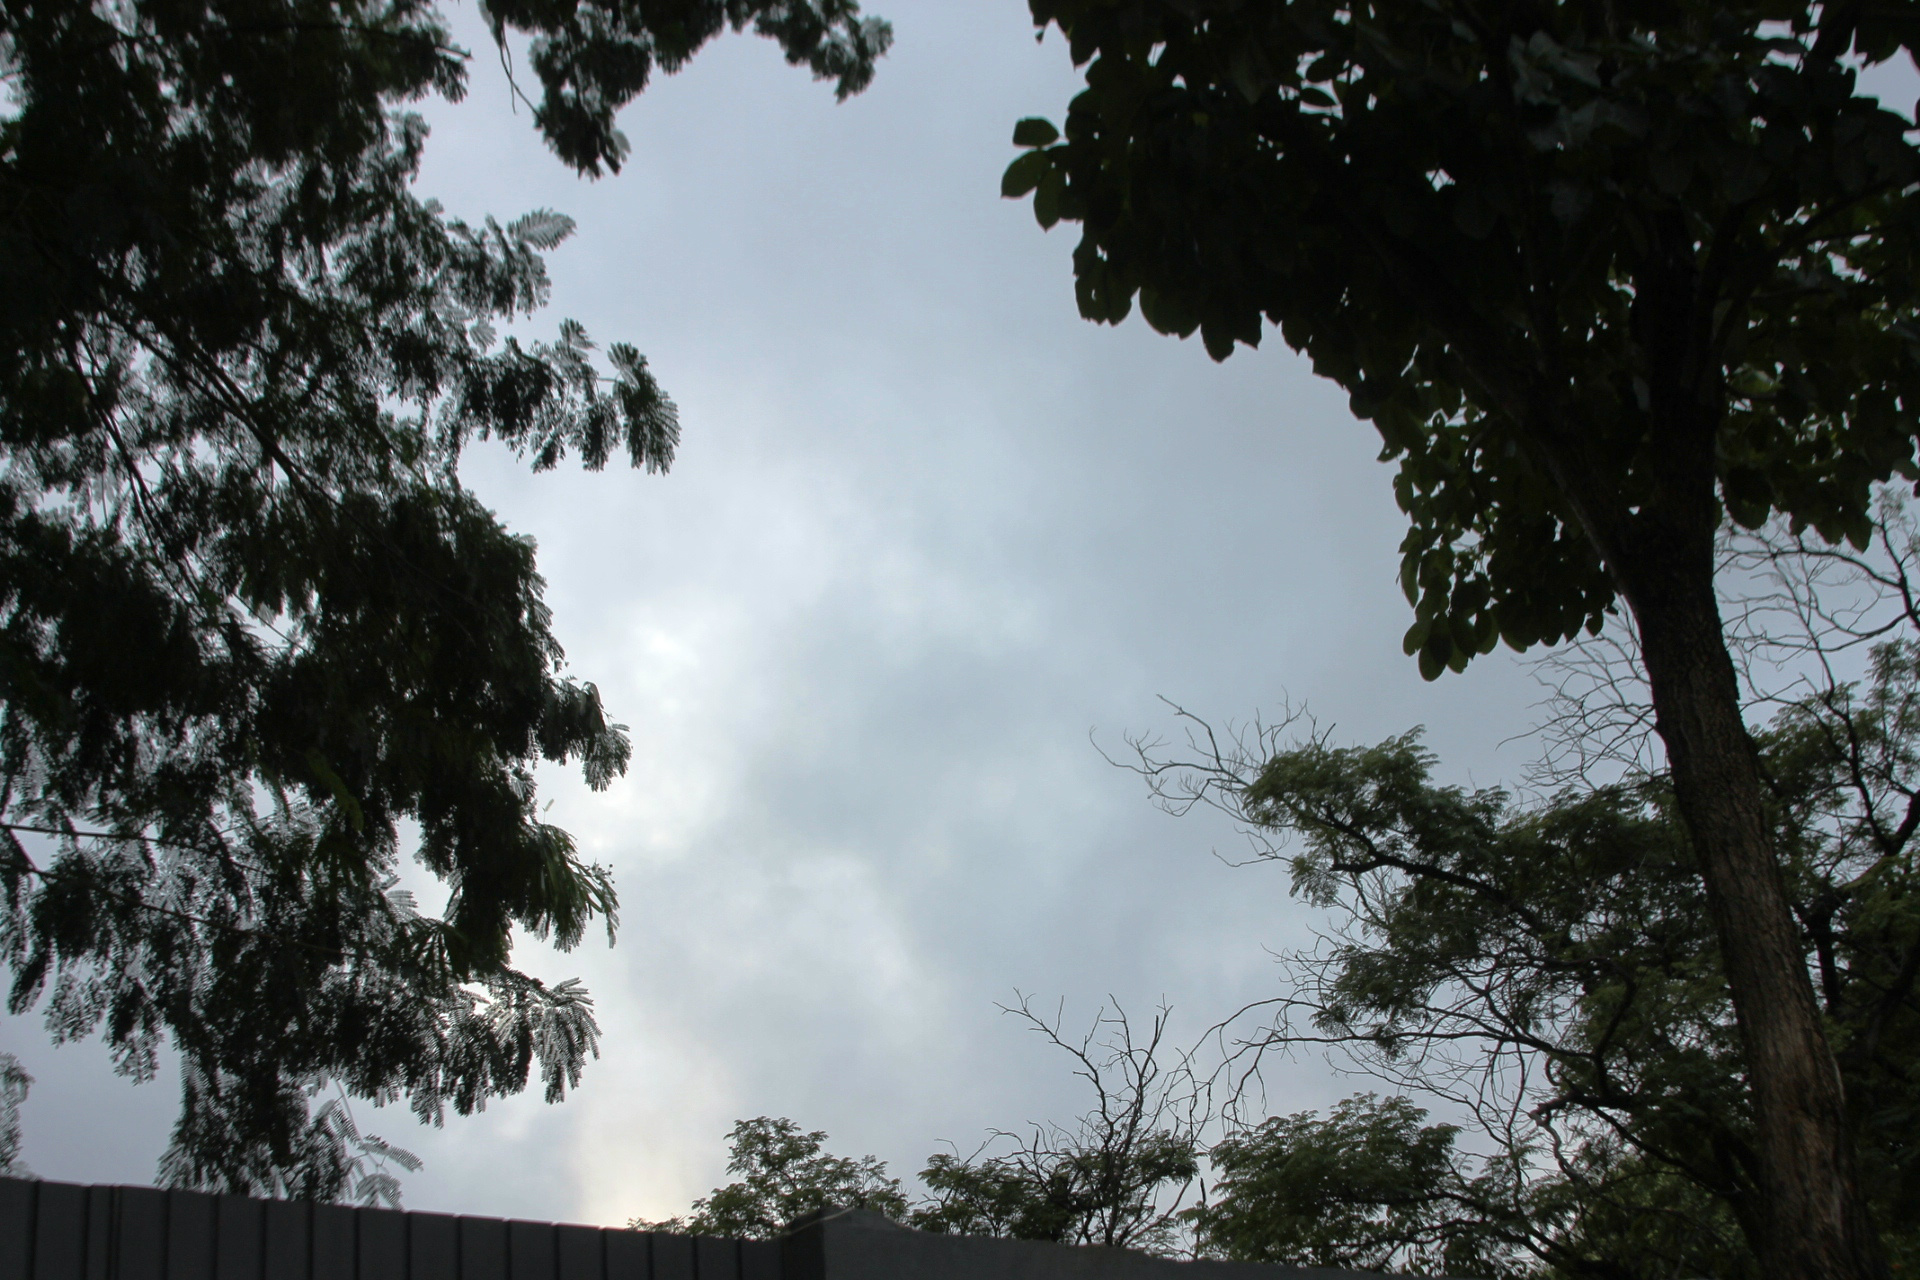 céu nublado nesta manhã em Três Lagoas. (Foto: Kênia Guimarães)